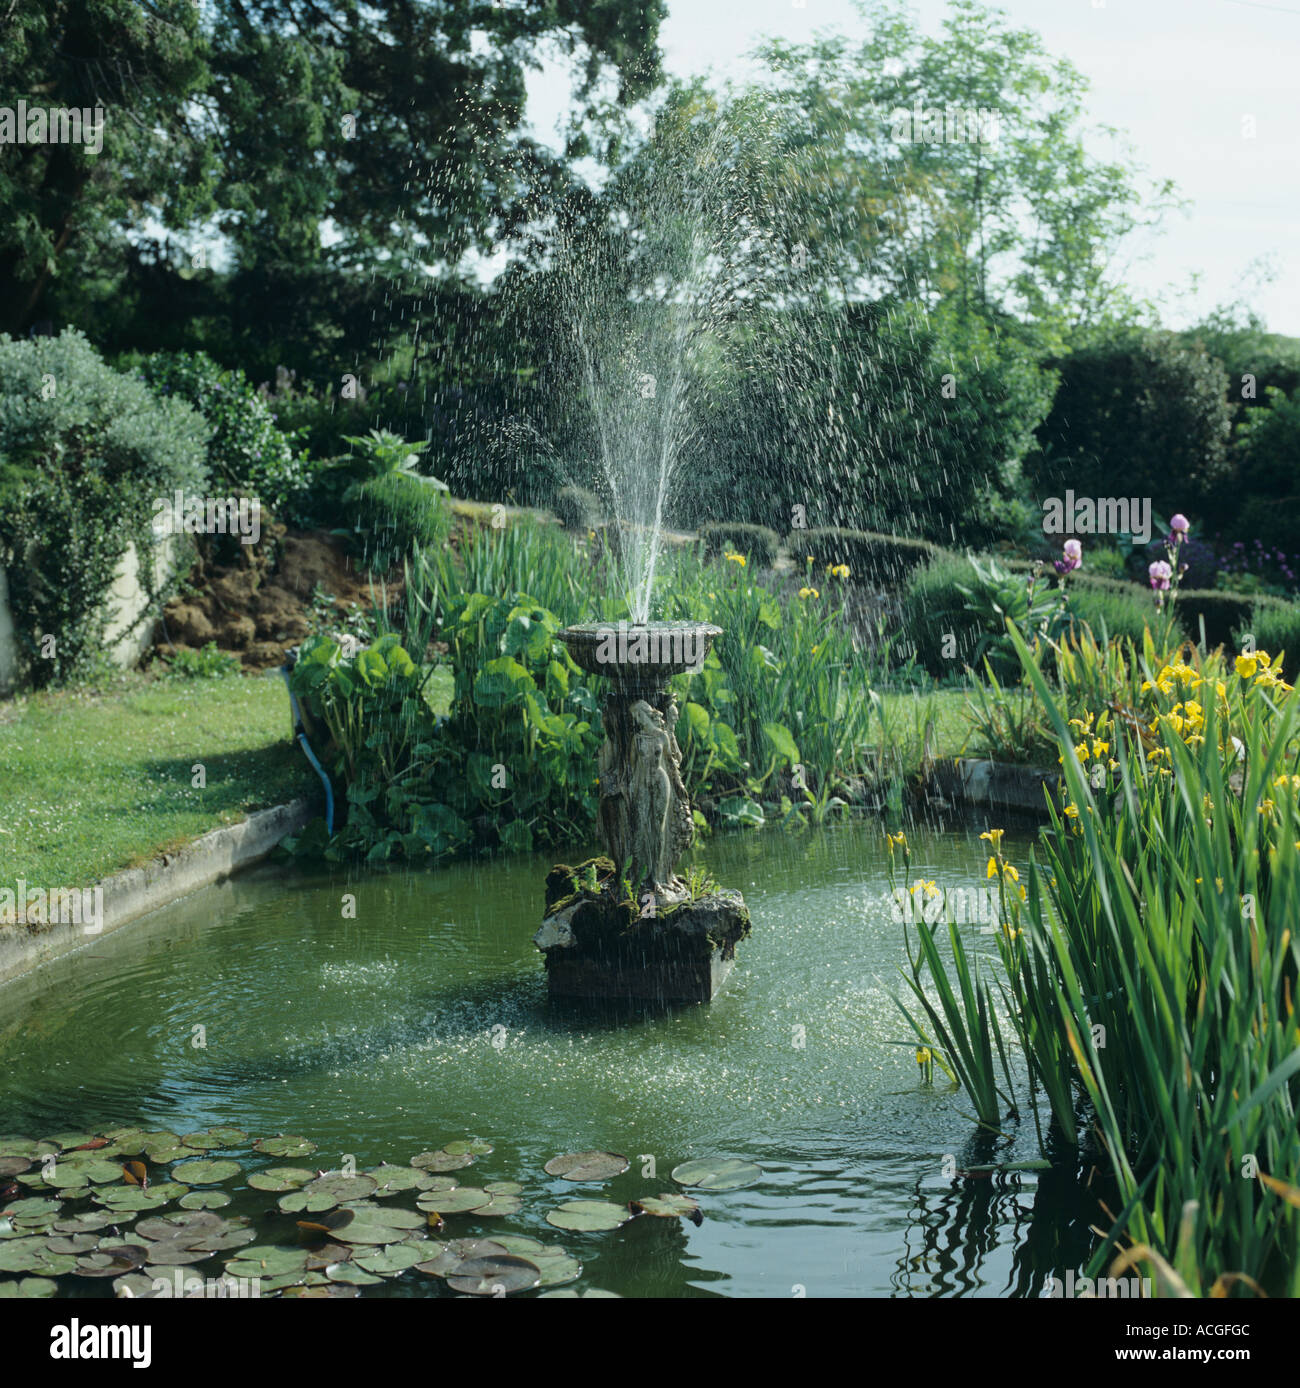 Bassin de jardin fontaine ornementale drapeau jaune iris nénuphars et autres plantes Banque D'Images